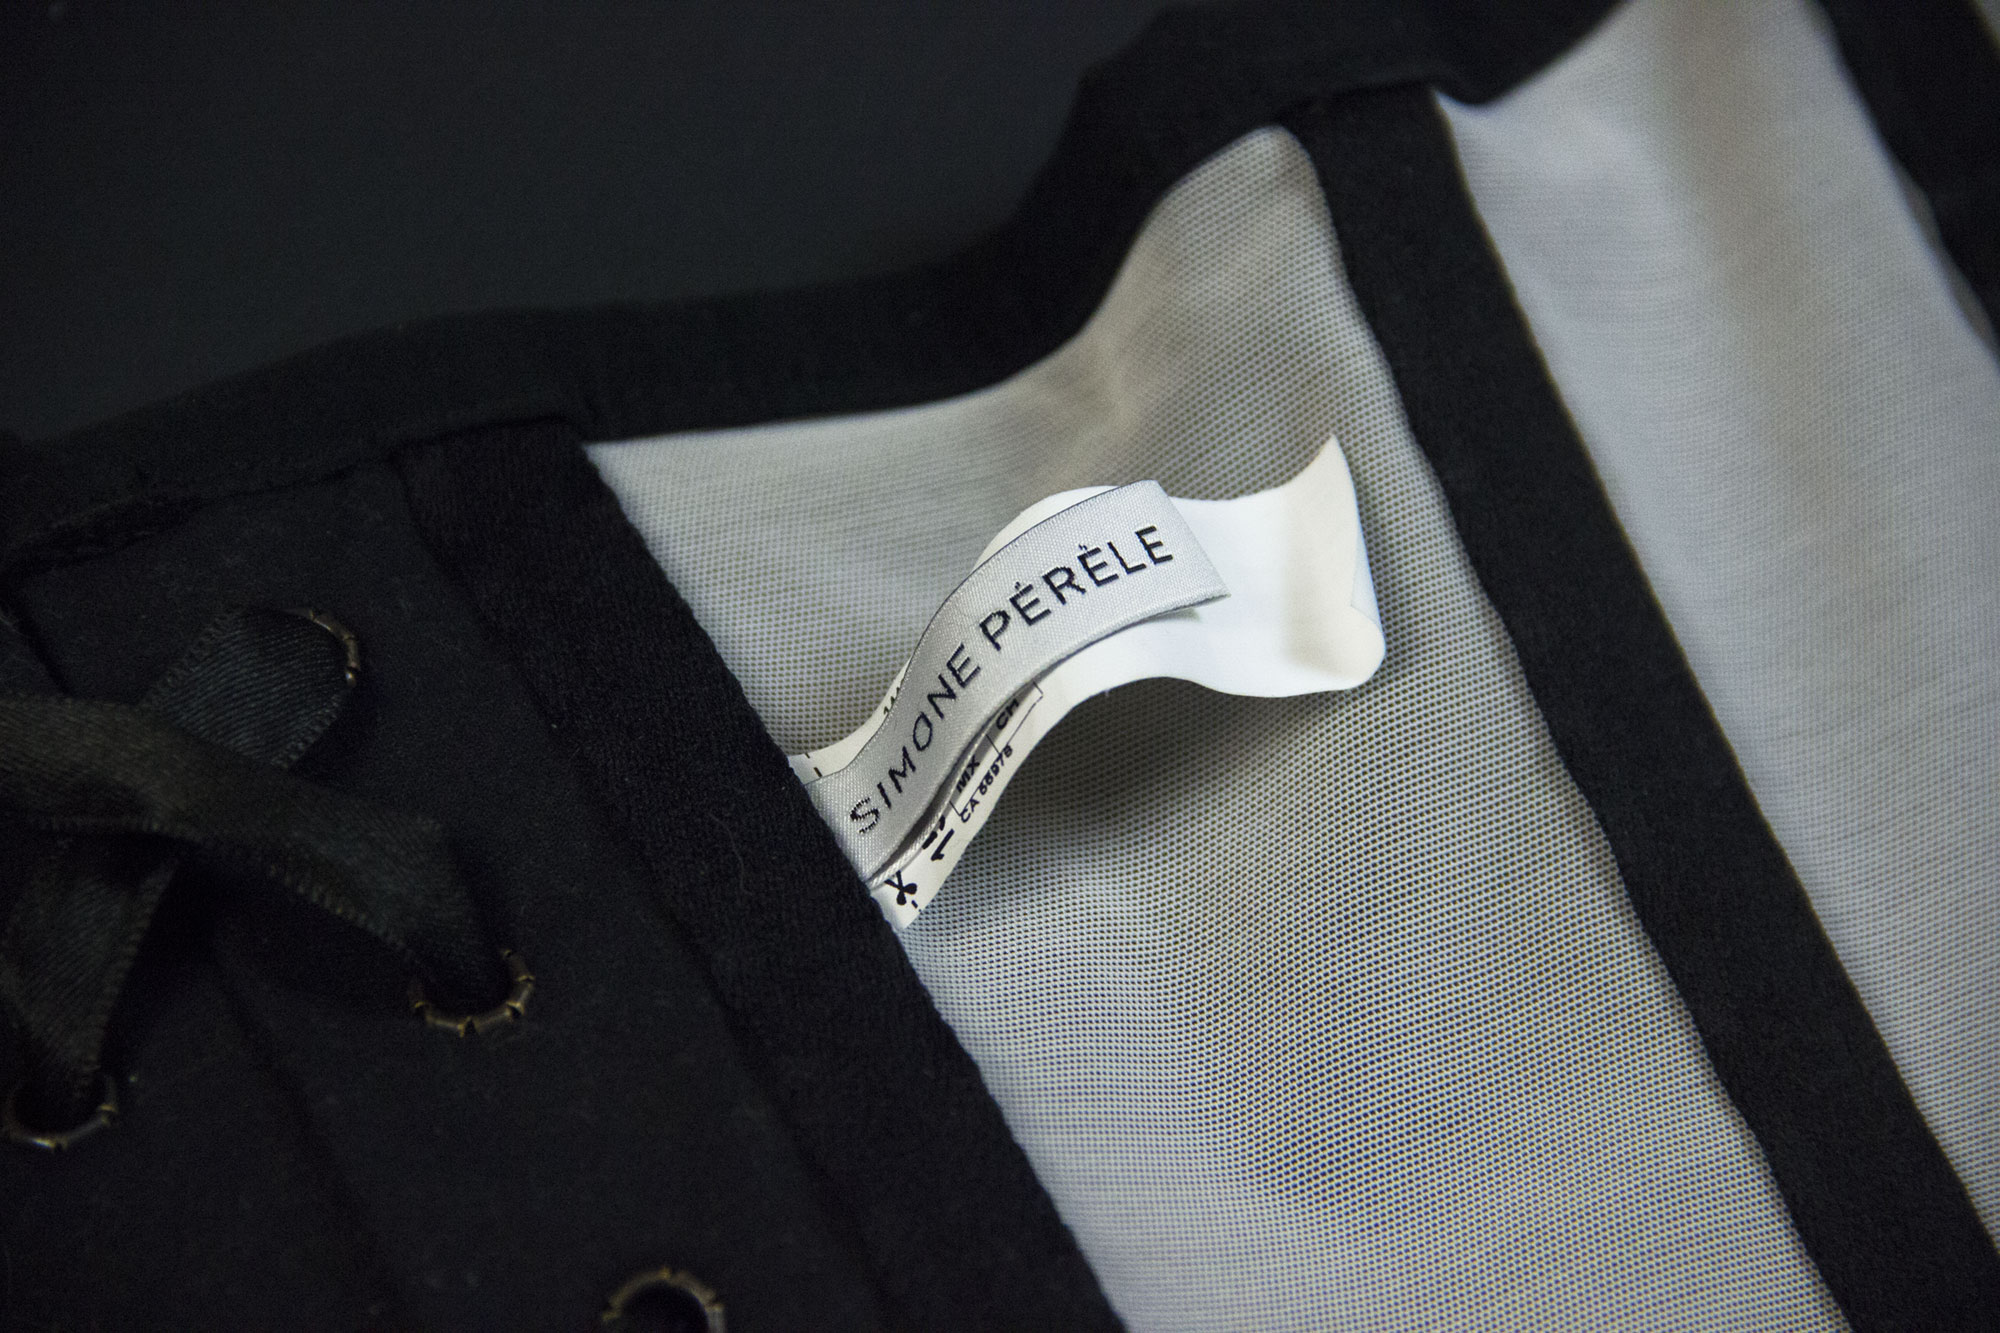 Обзор корсета от французского бренда нижнего белья Simone Perele